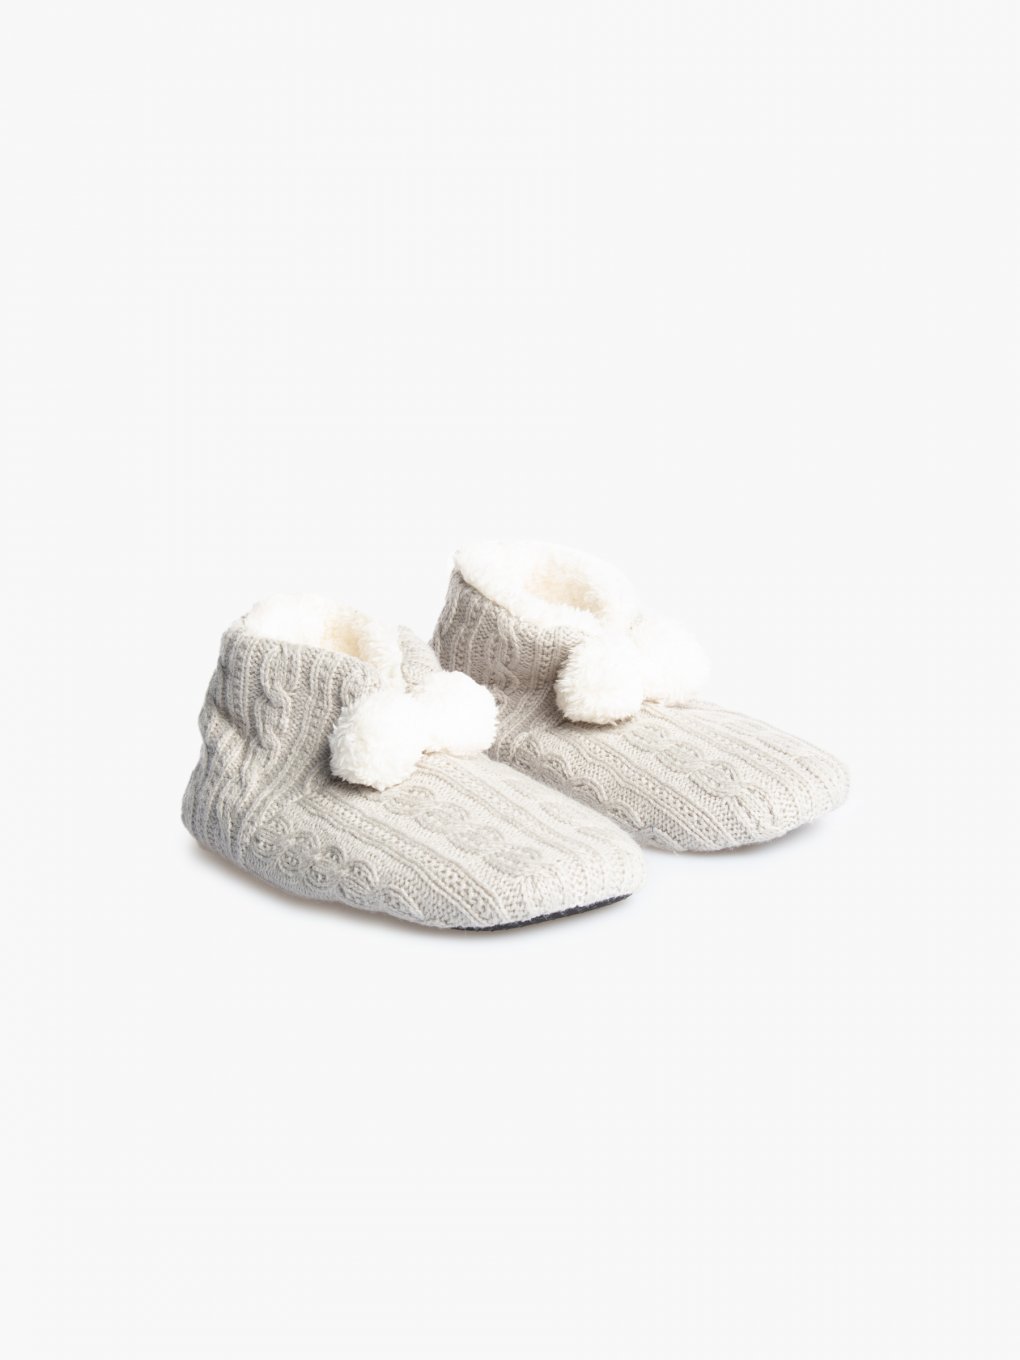 Warm slippers with pom poms